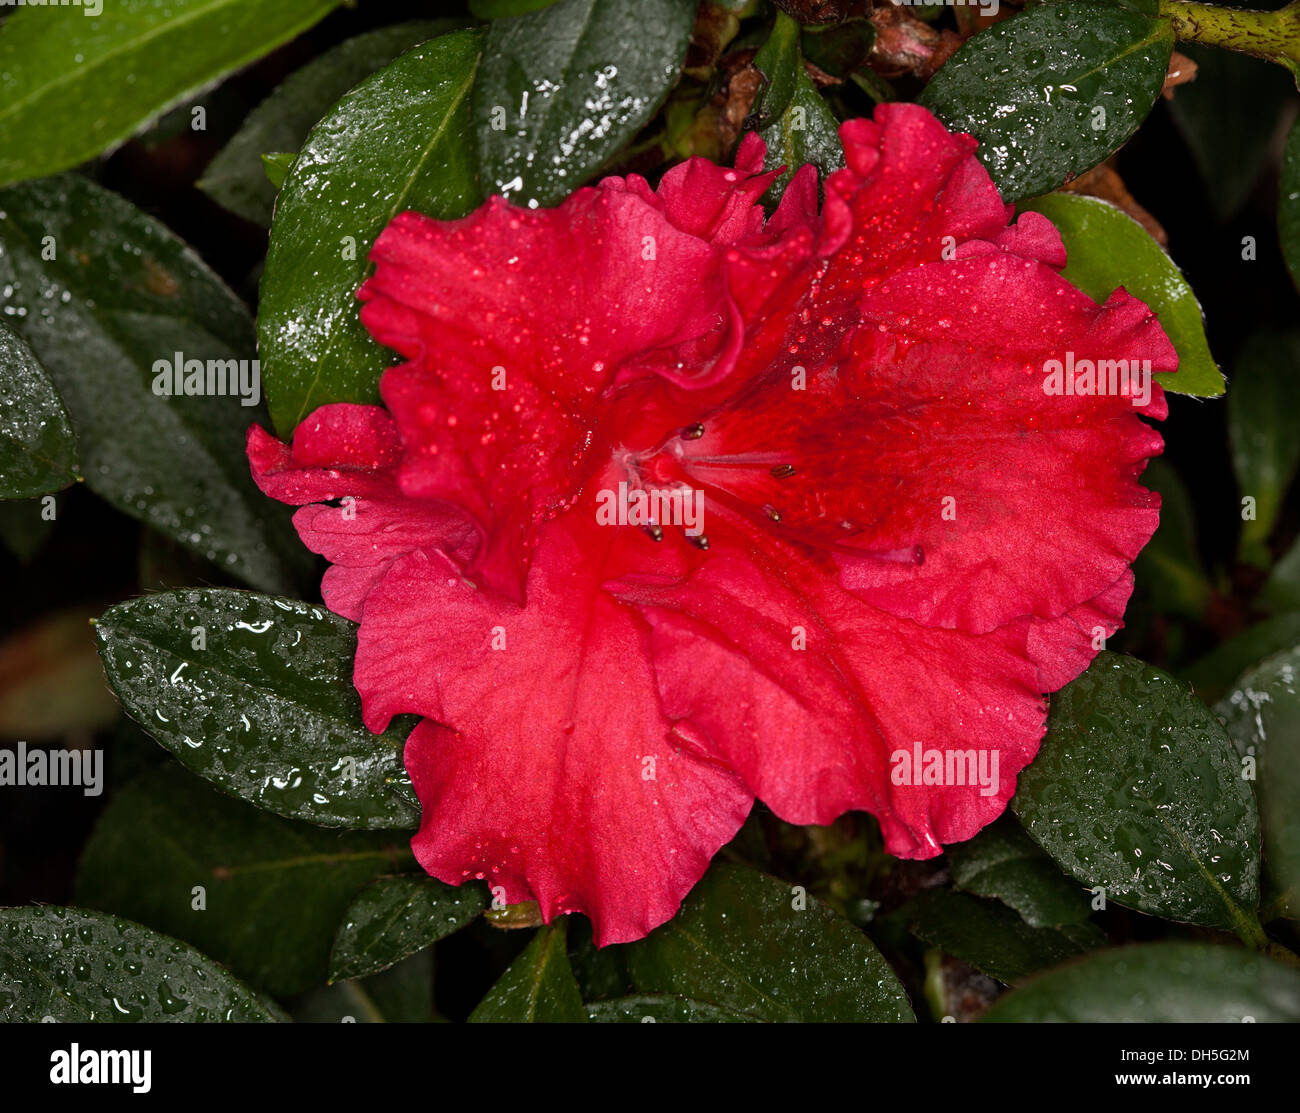 Helles Magenta Rot Blume des Azalea Indica 'Red Wing' und dunkelgrünes Laub mit Regentropfen auf den Blättern Stockfoto